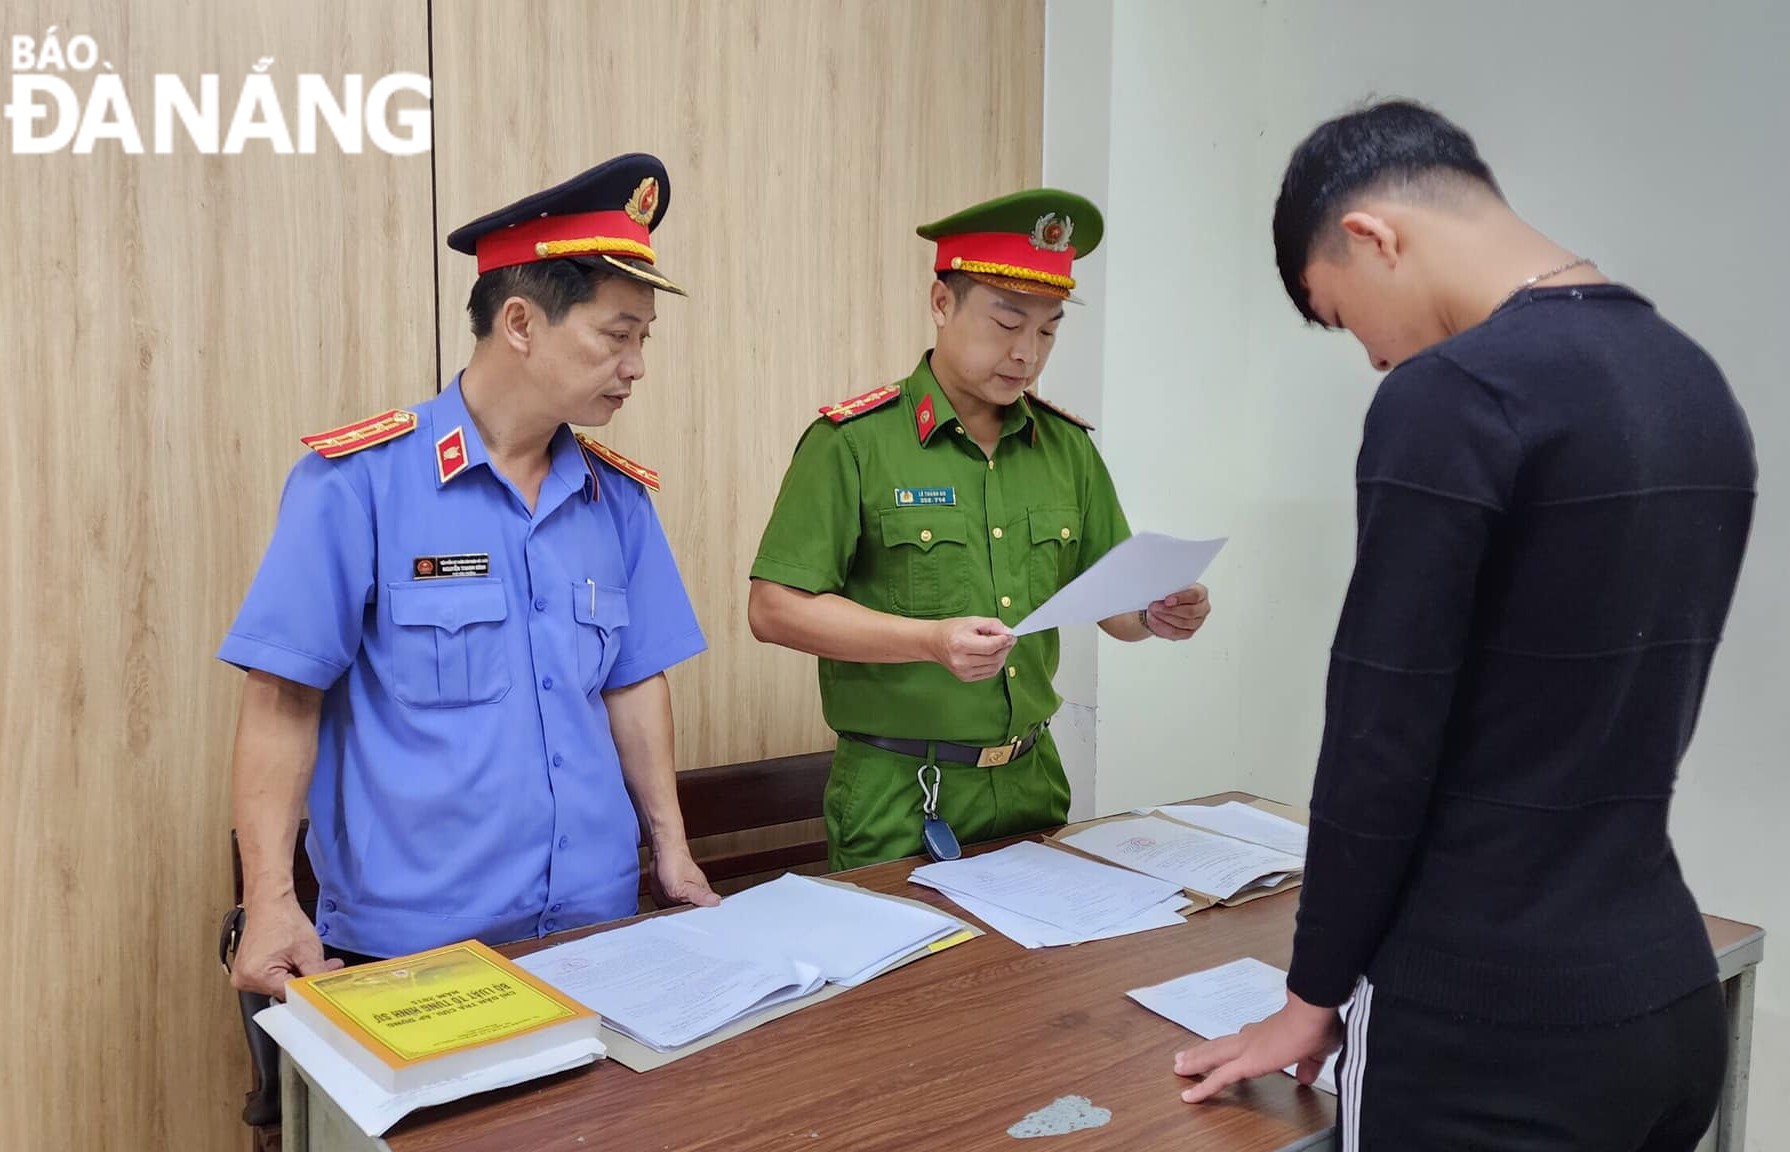 Cơ quan Cảnh sát điều tra Công an quận Hải Châu ra quyết định khởi tố bị can Hồ Lê Hoàng (phải) về hành vi “Chống người thi hành công vụ”. Ảnh: NGỌC QUỐC